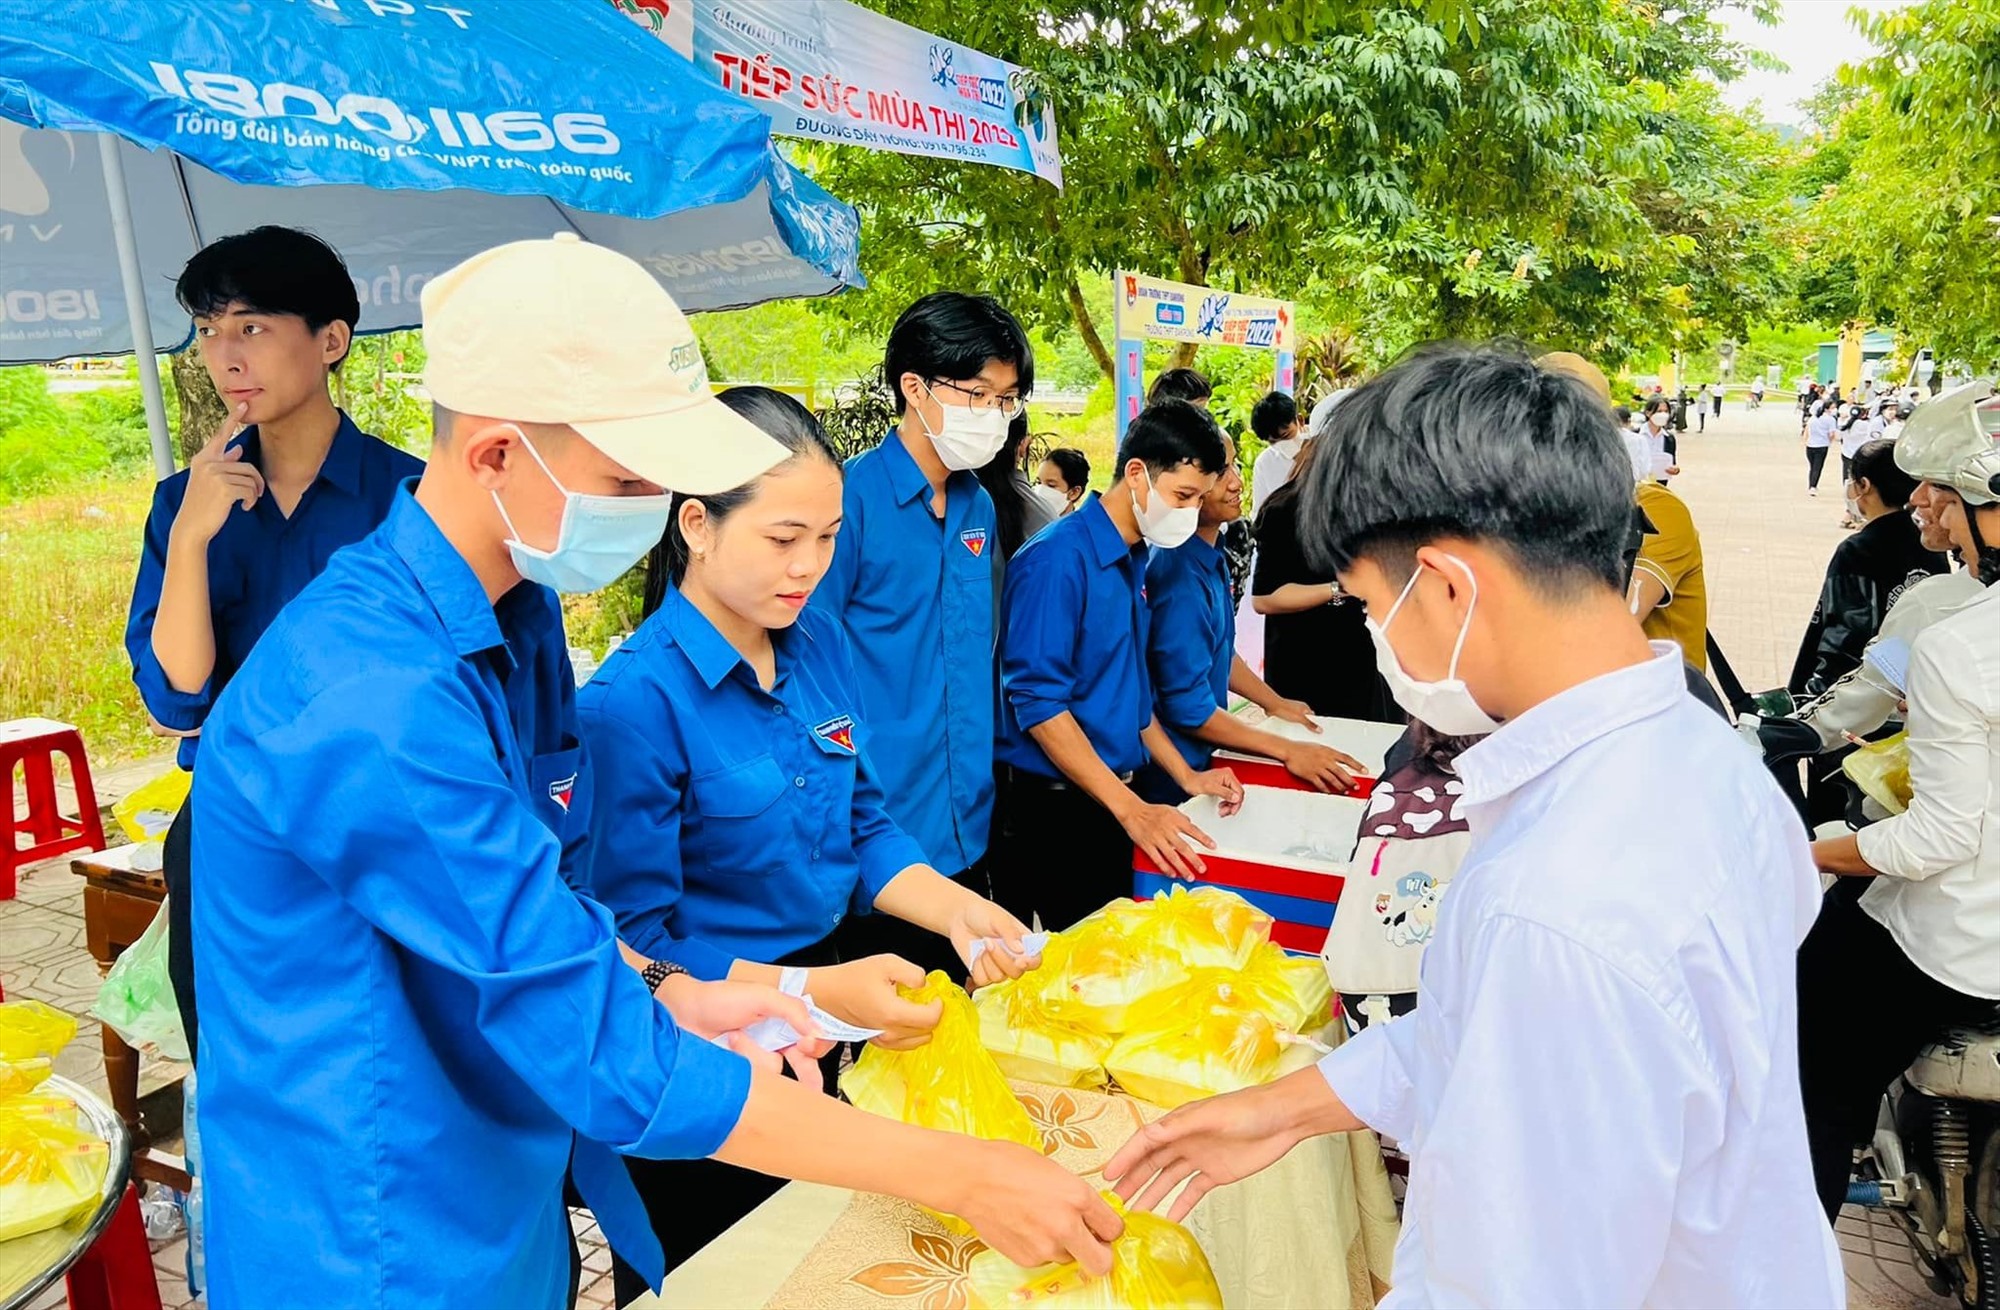 Đội thanh niên tình nguyện Đoàn trường THPT Đakrông hỗ trợ suất ăn sáng cho thí sinh - Ảnh: Đoàn trường THPT Đakrông